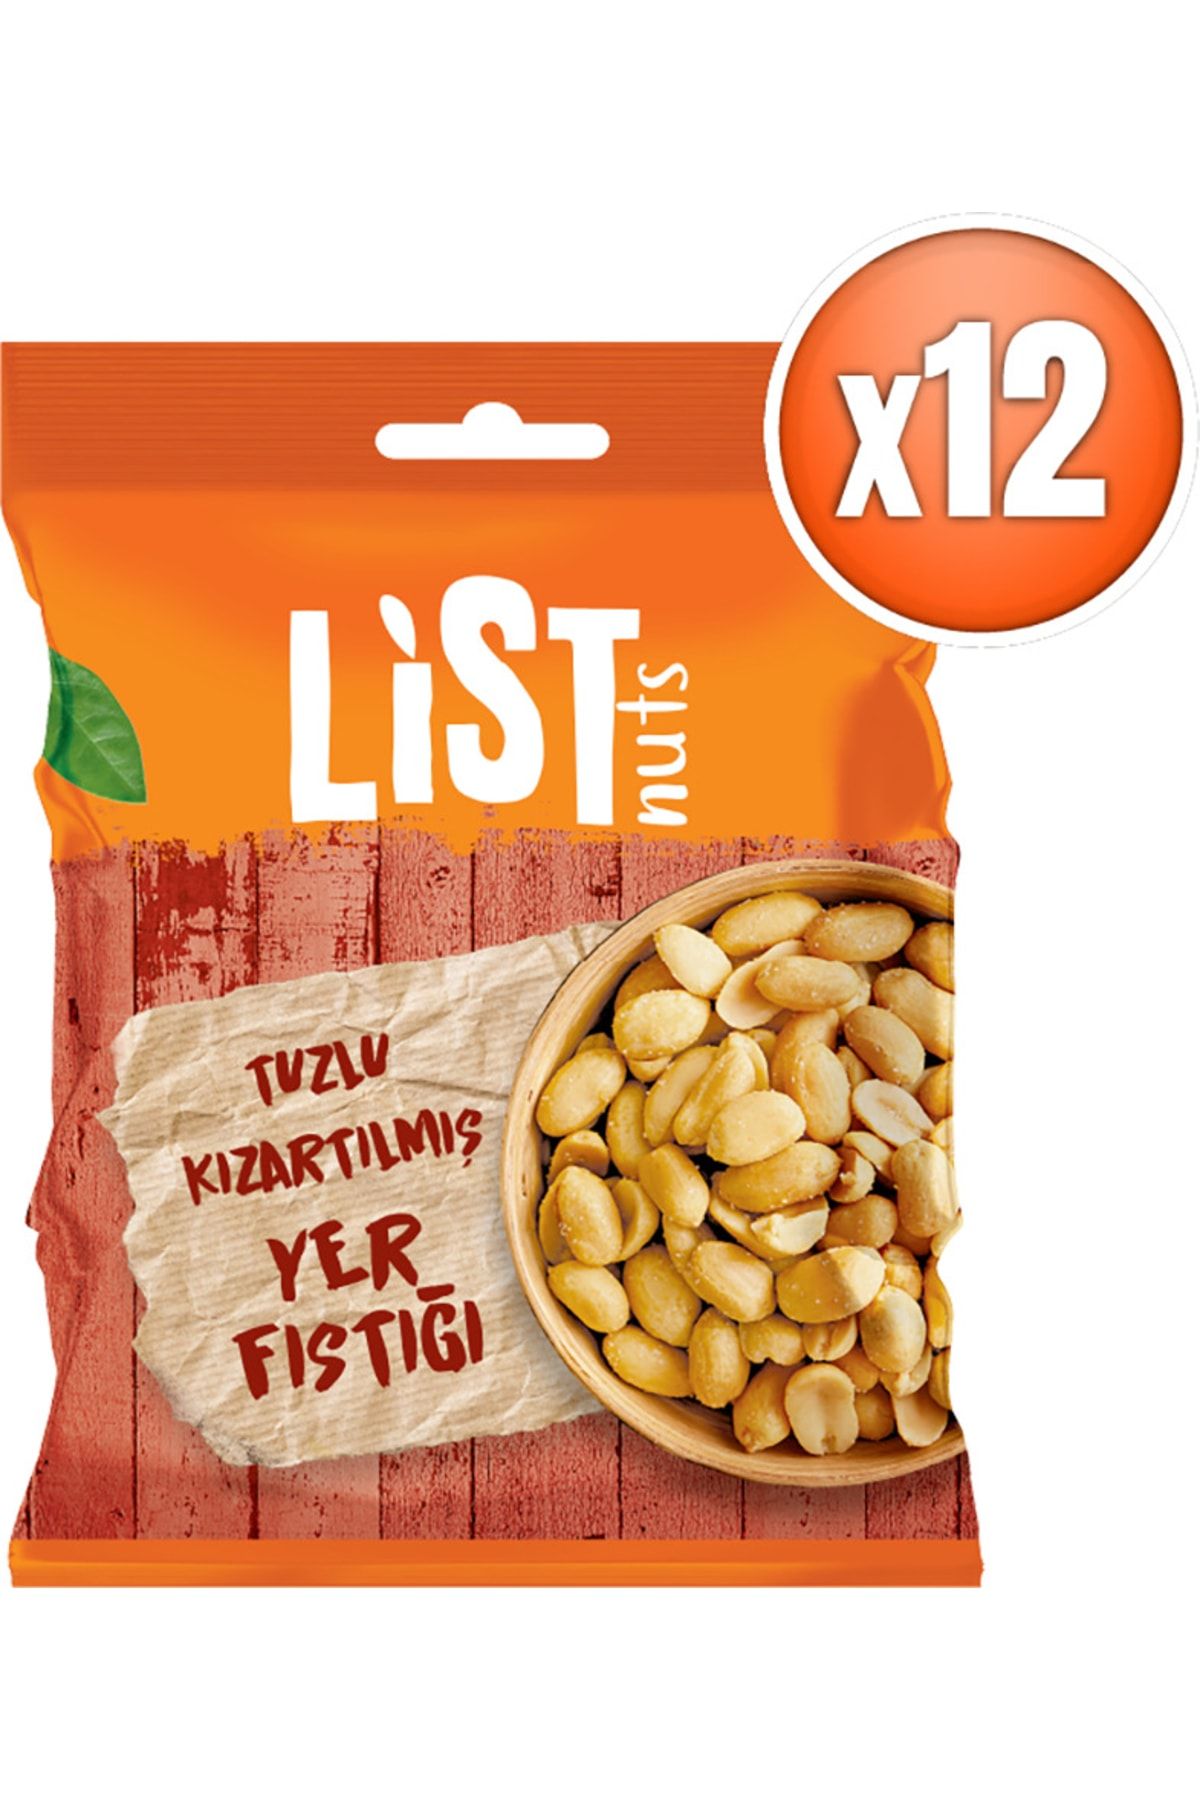 List Nuts Kızarmış Yer Fıstığı 12 X 150 G